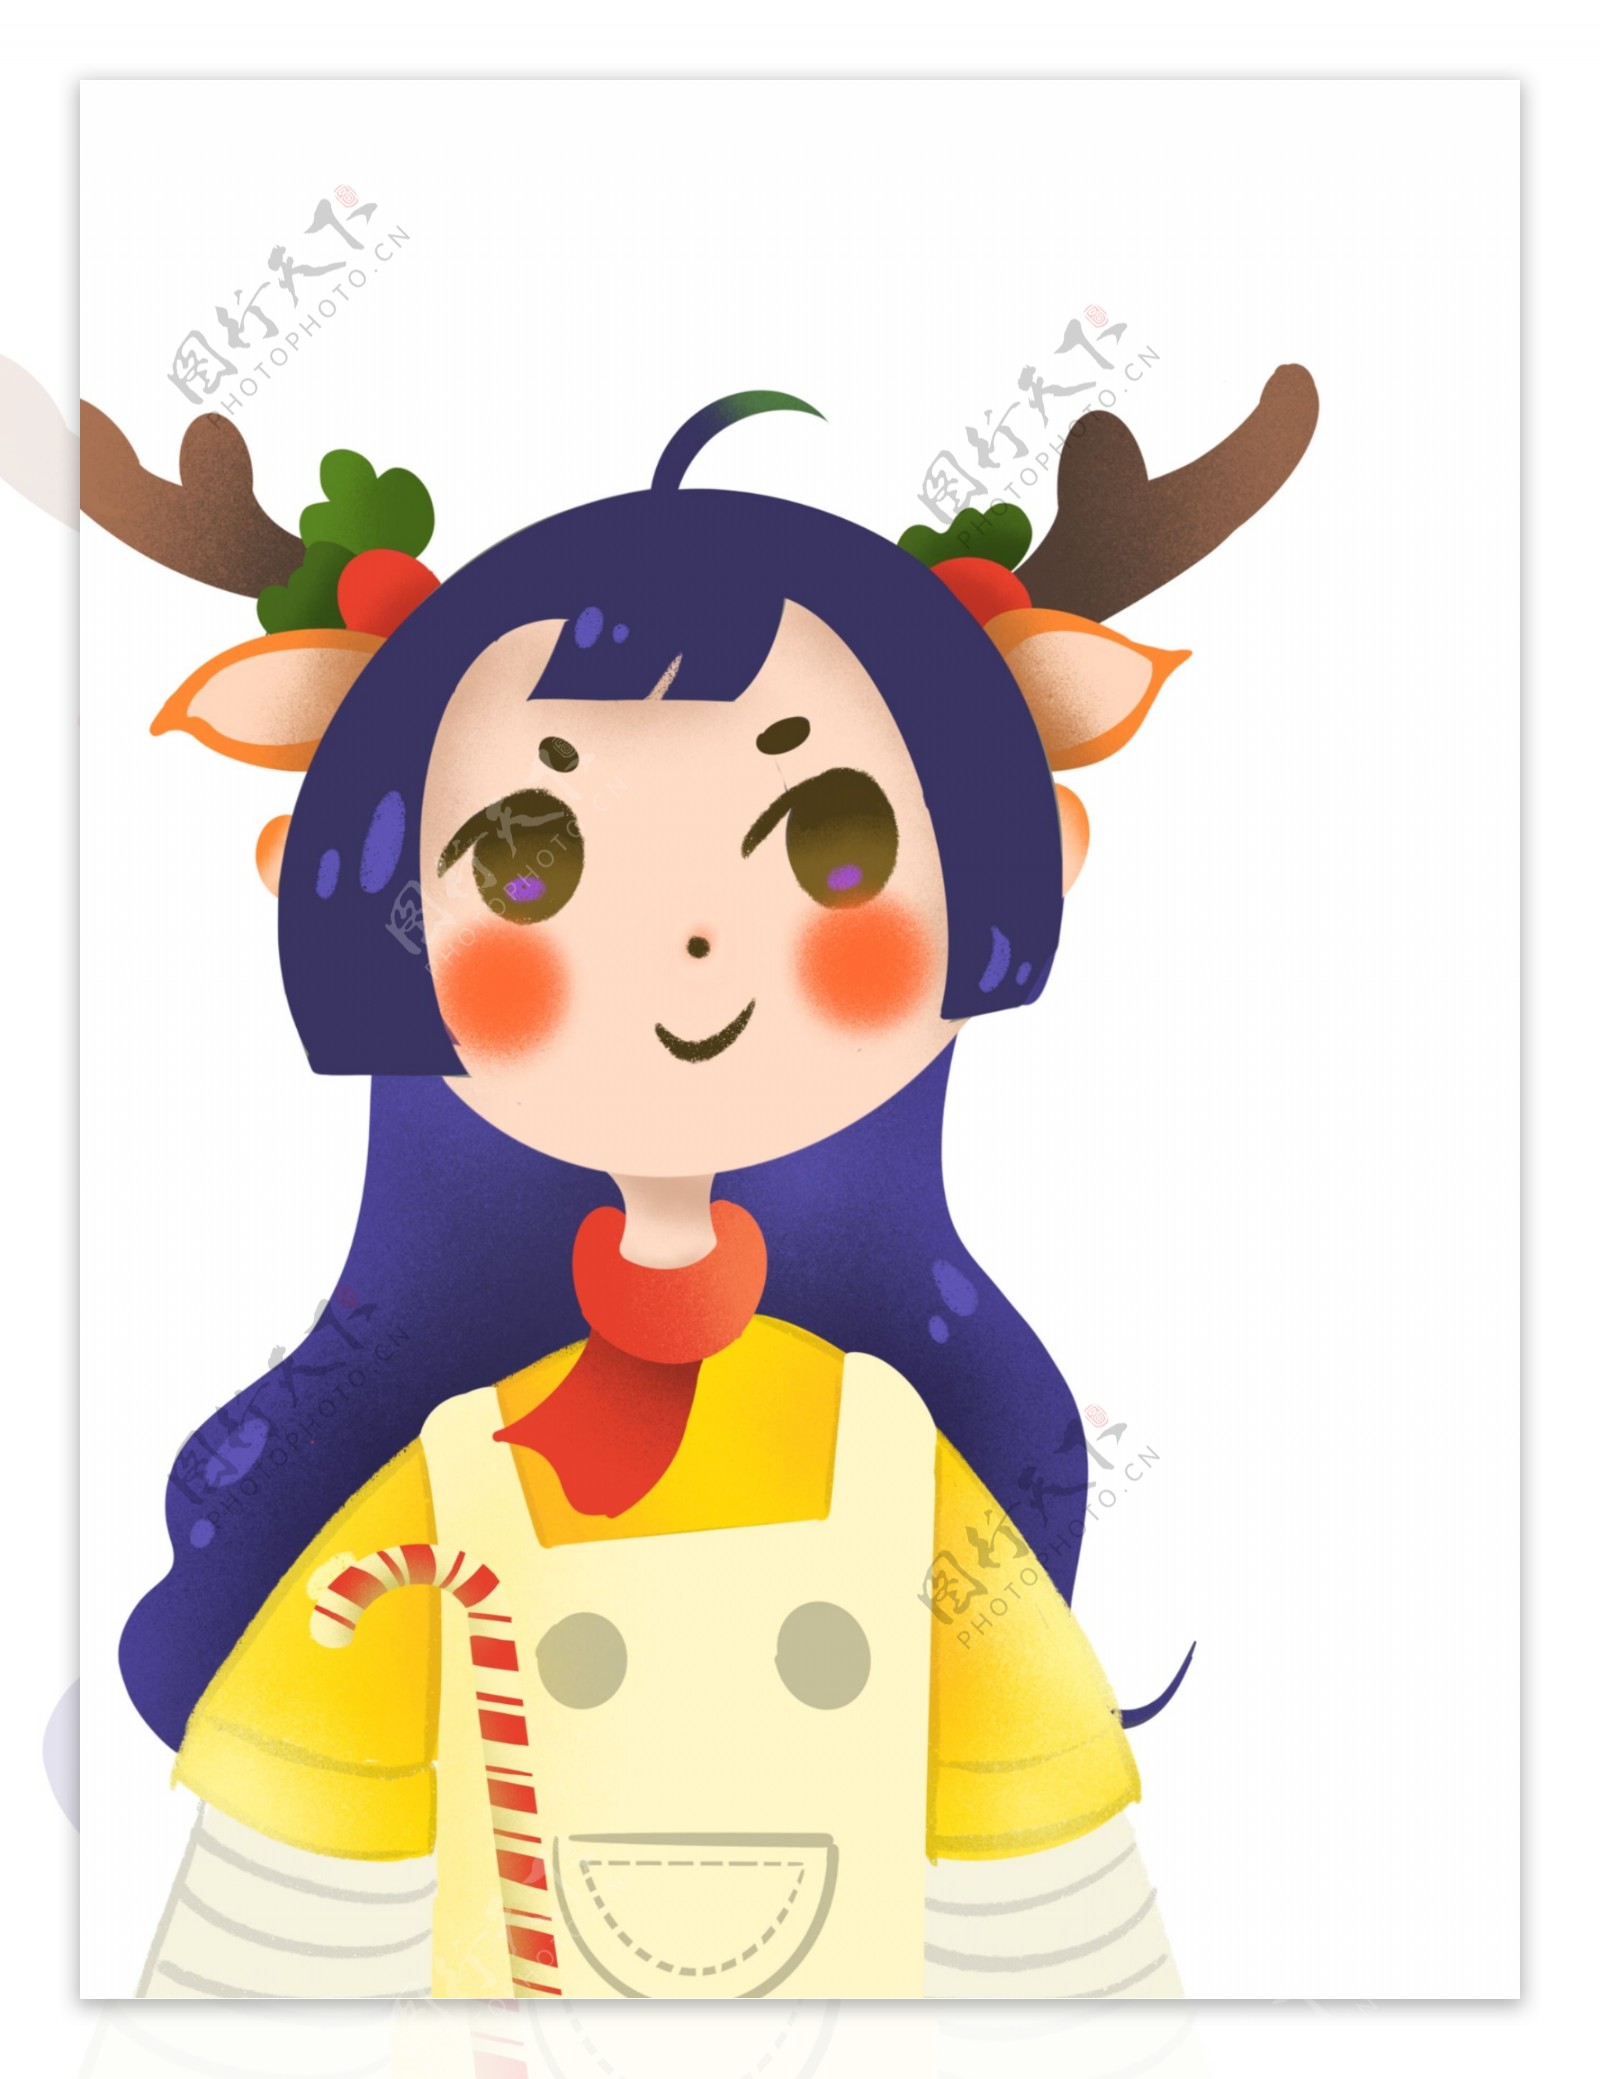 彩绘圣诞节麋鹿装扮女孩人物设计